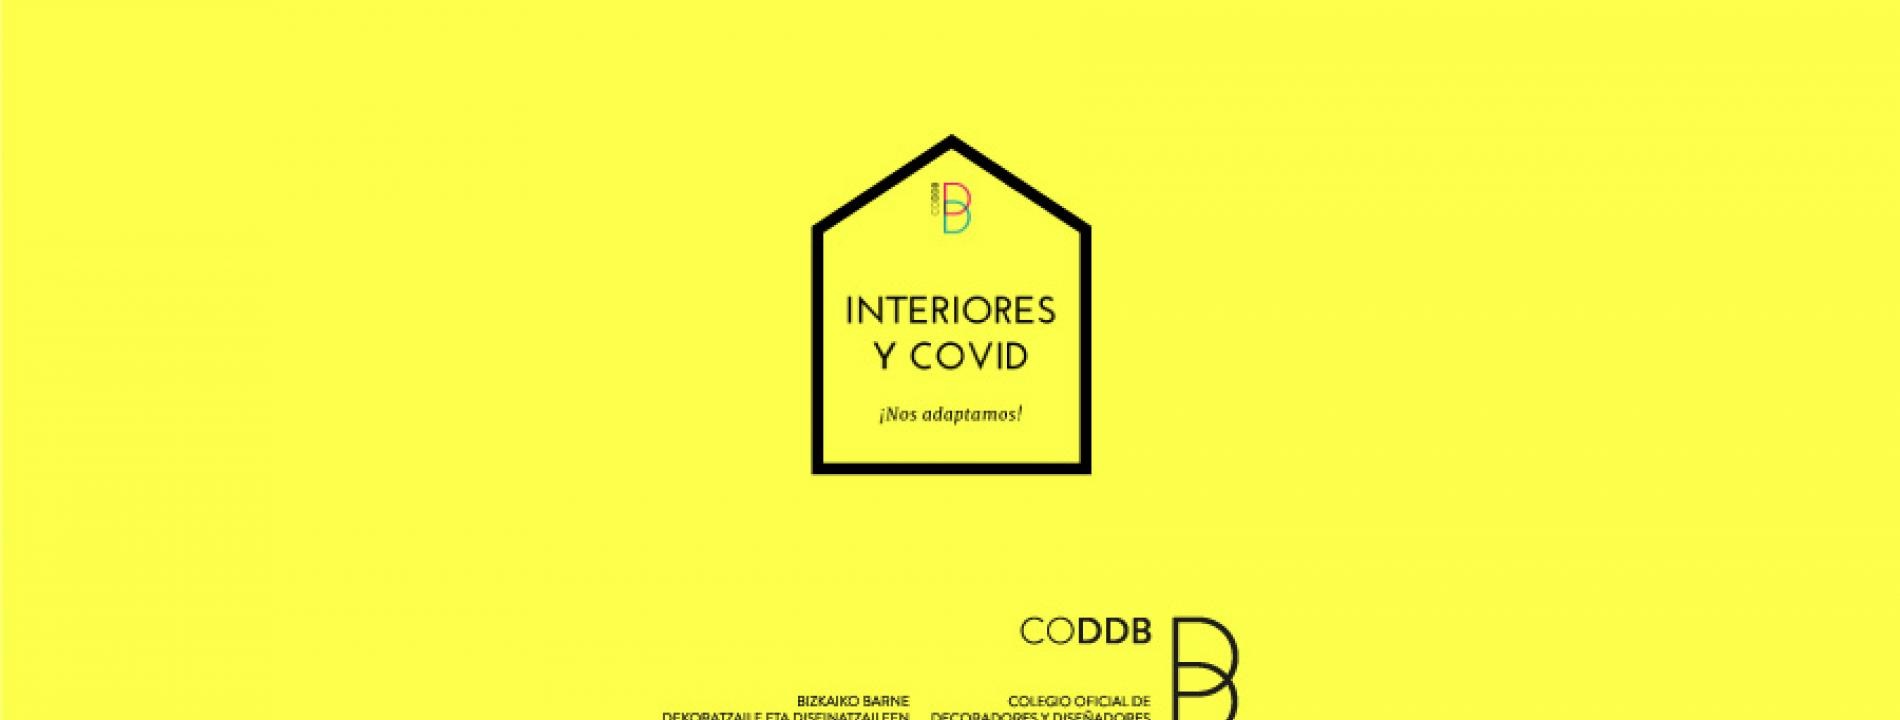 CODDB - Interiores y COVID